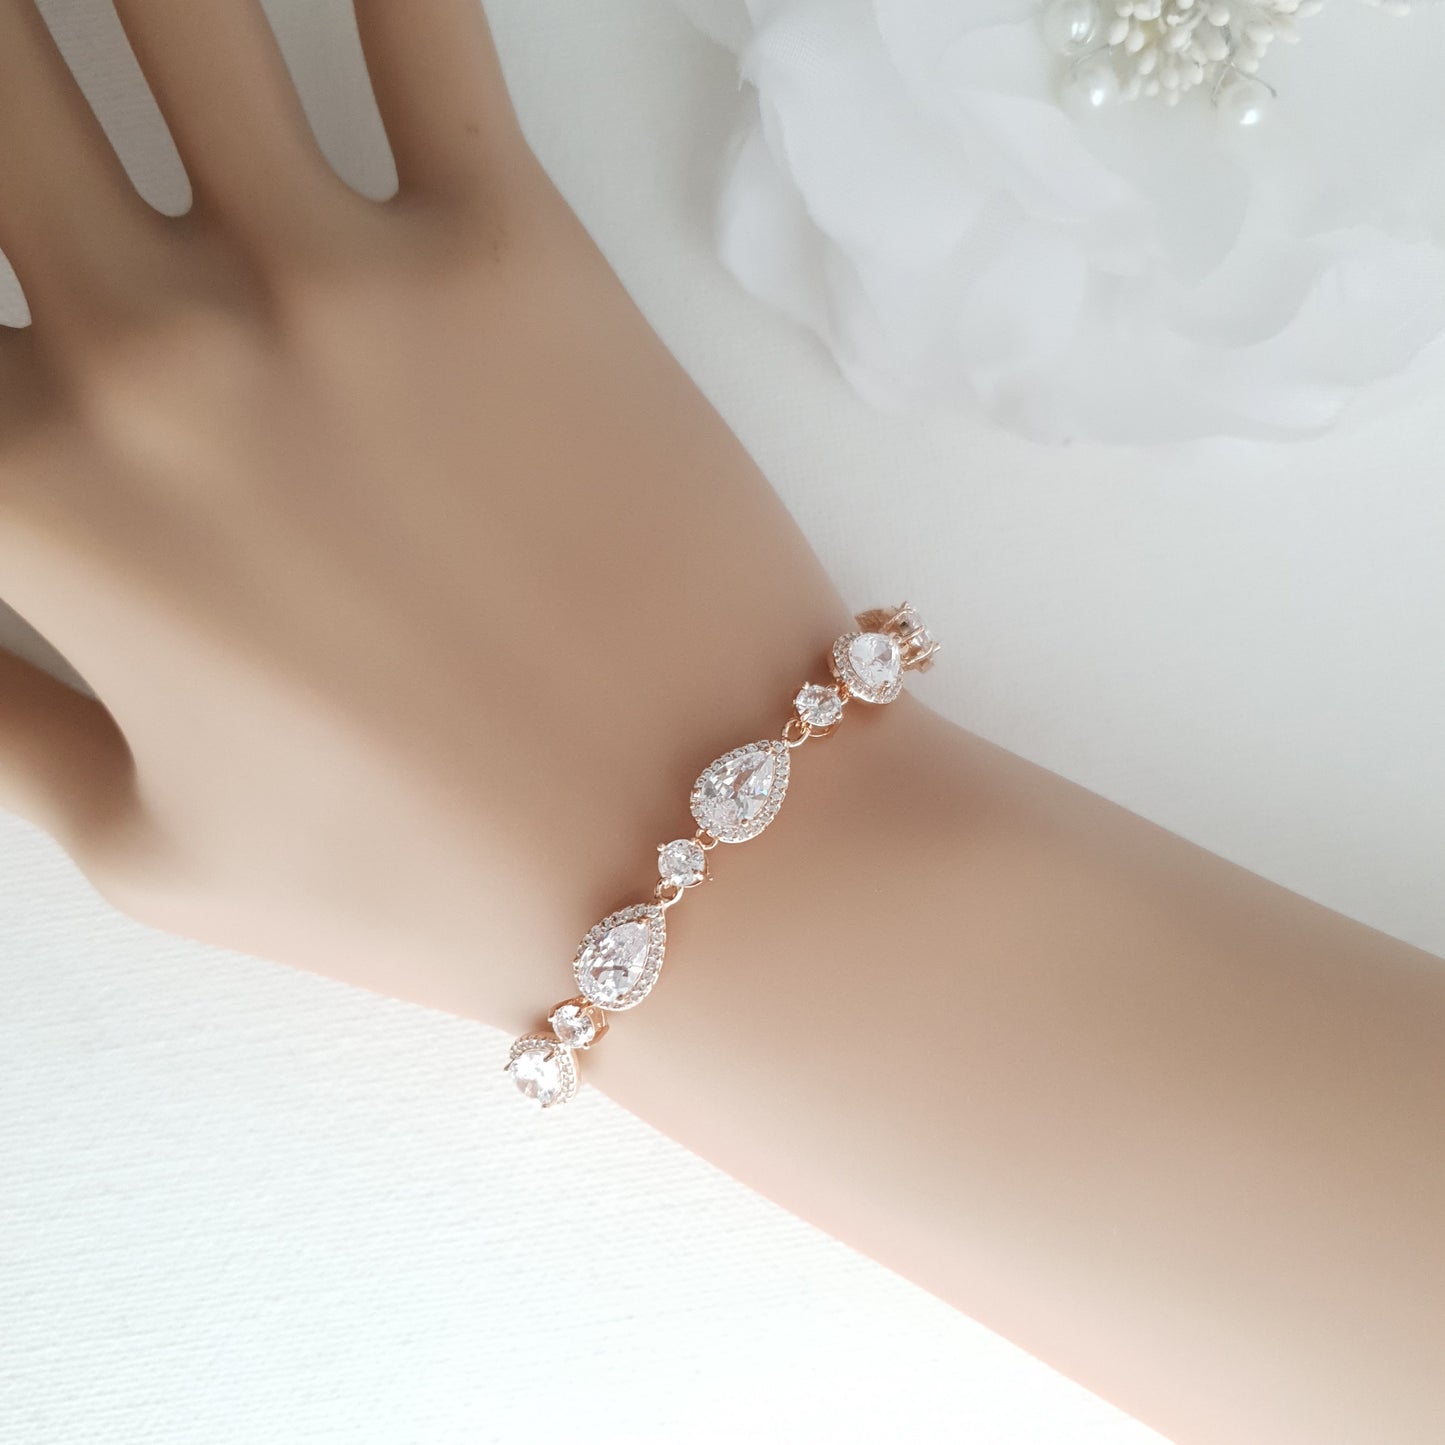 Silver Wedding Bracelet with Teardrops-Luna